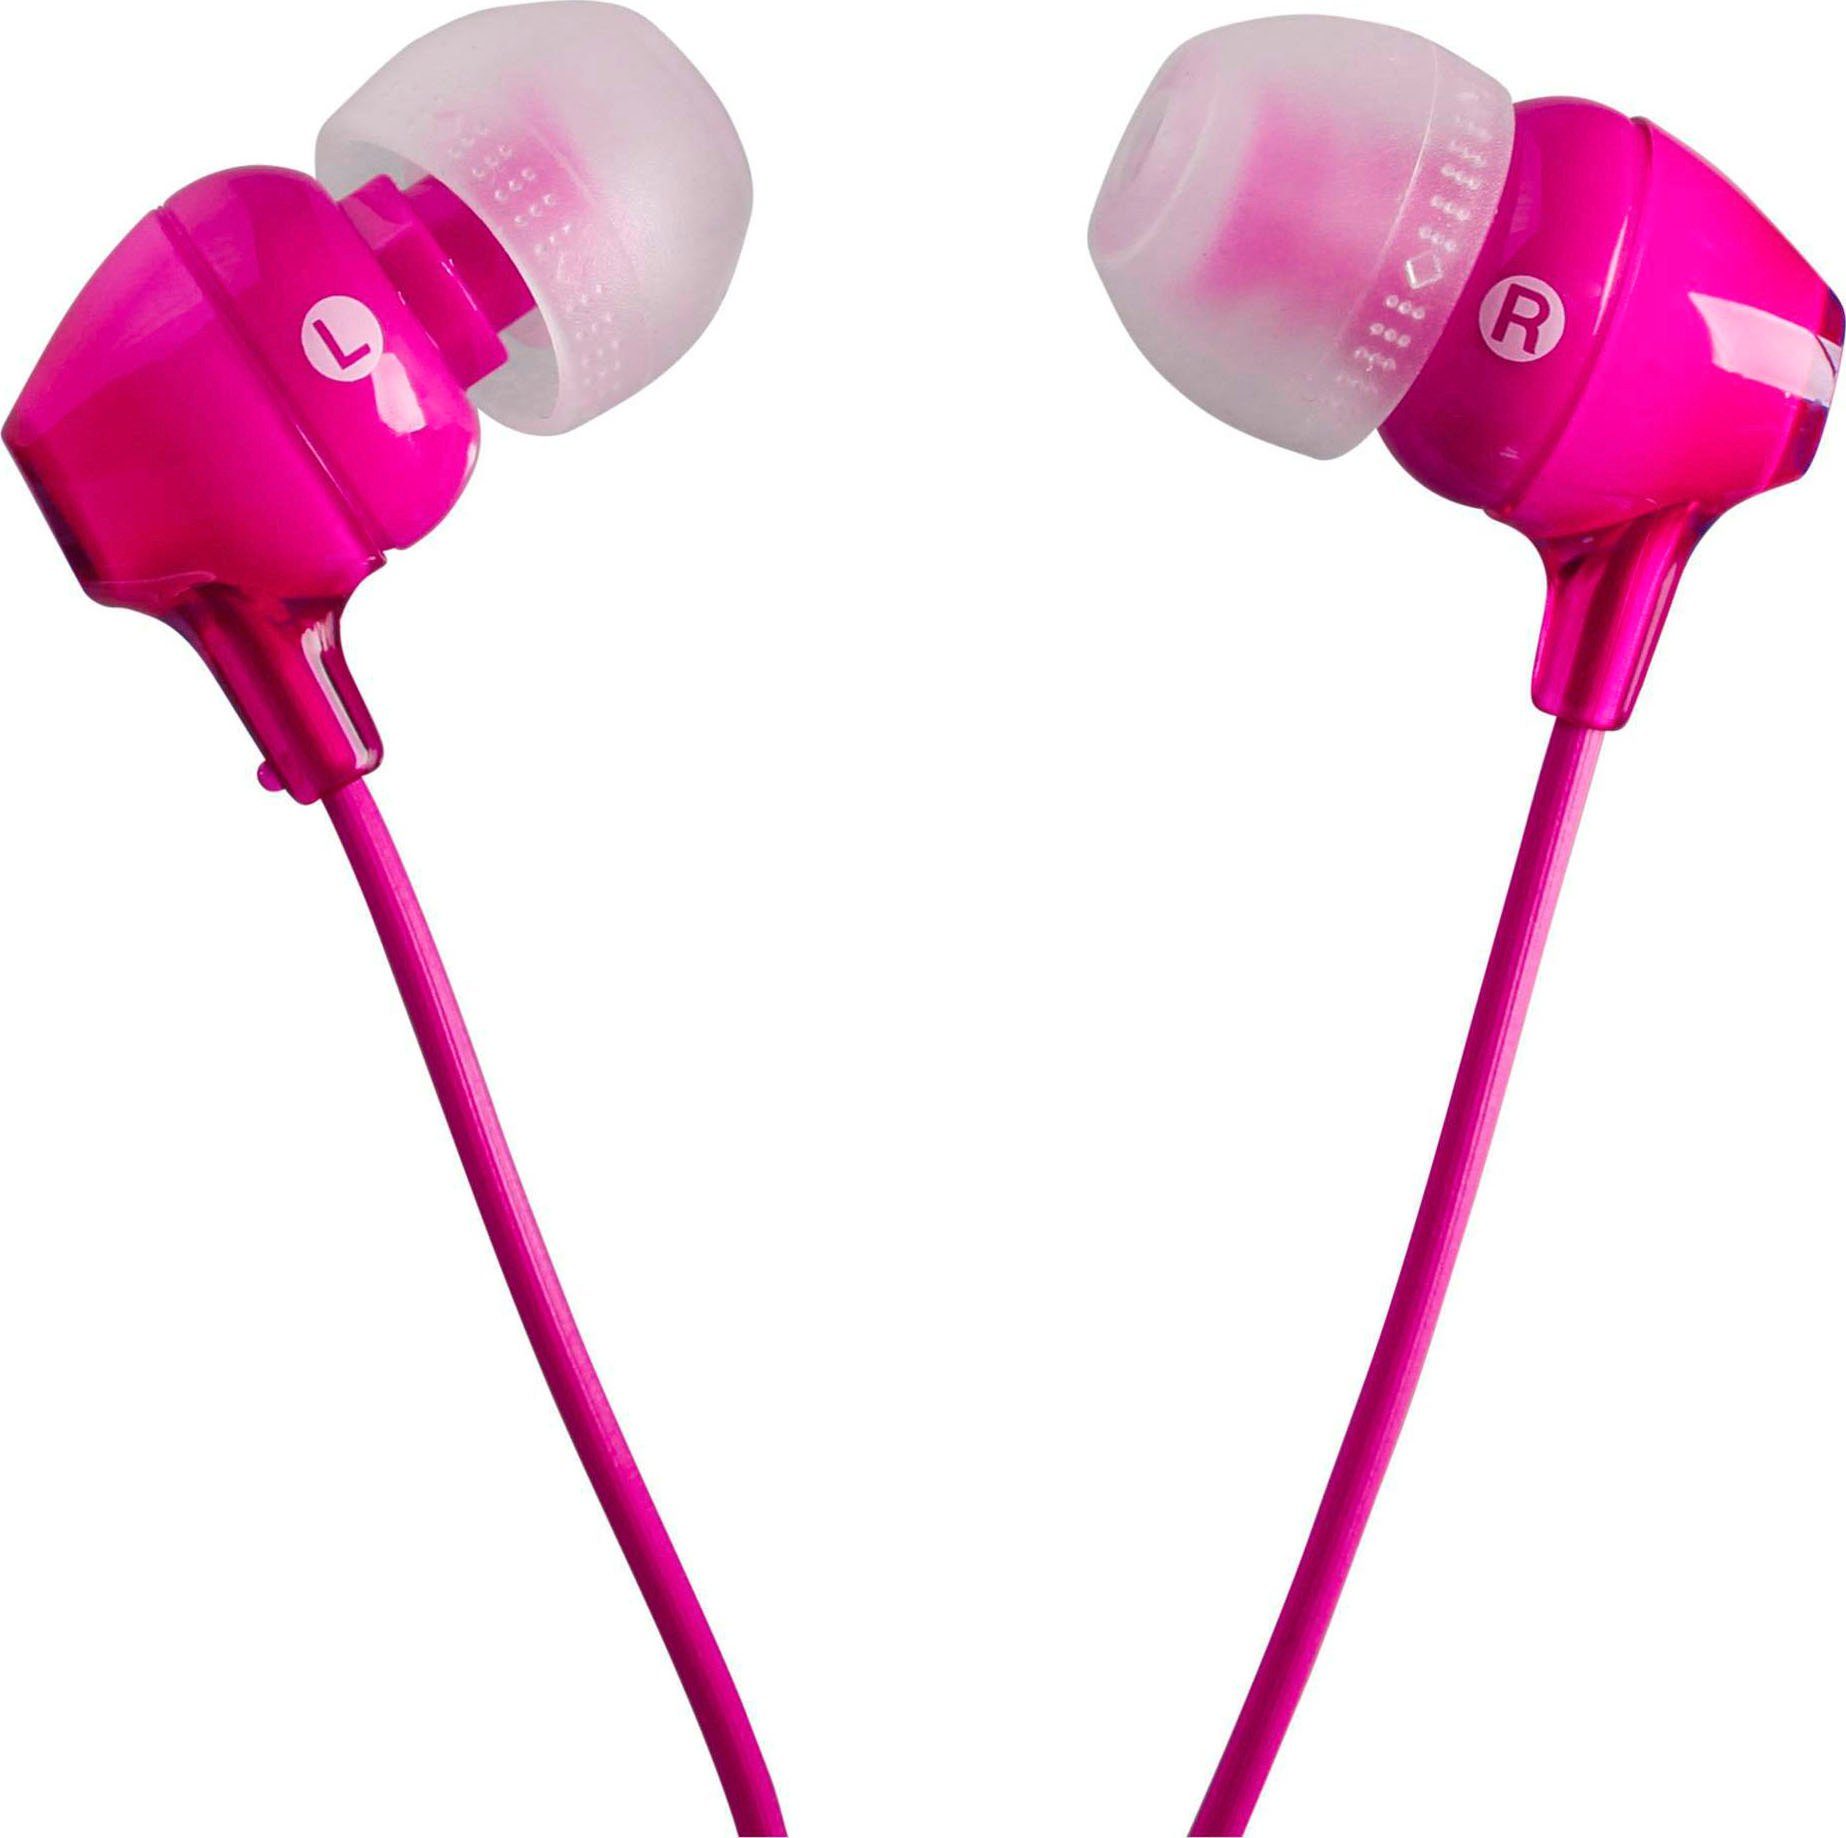 Sony MDR-EX15AP In-Ear-Kopfhörer (Rauschunterdrückung, Fernbedienung) mit pink